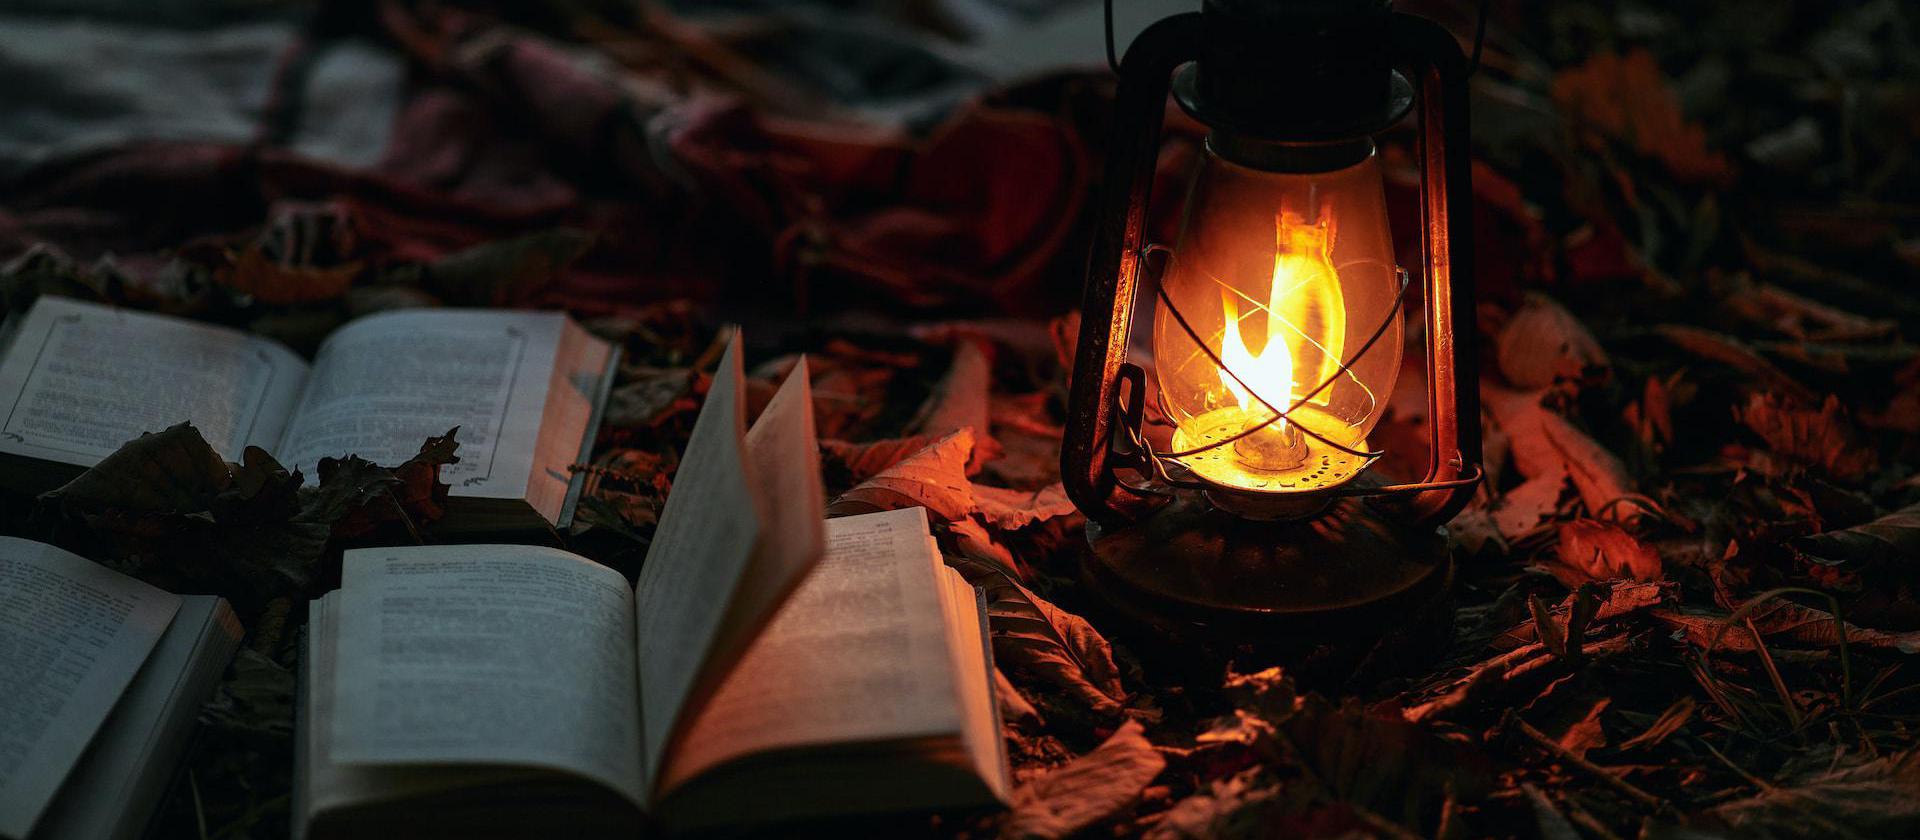 lantern next to old books